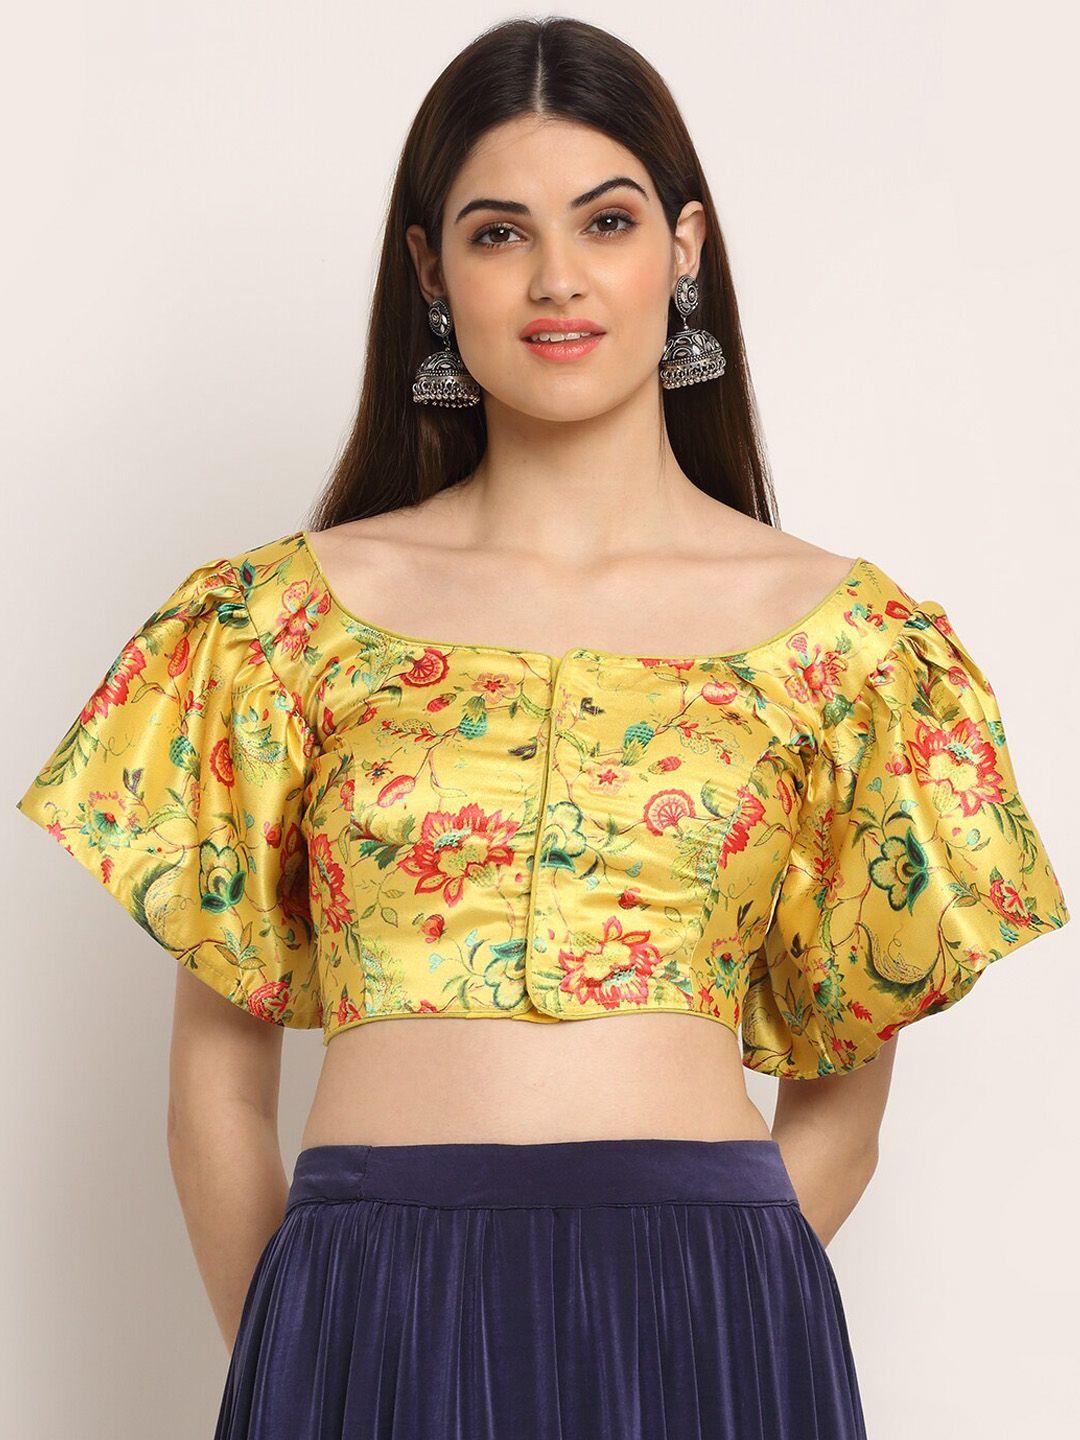 grancy women mustard yellow & pink printed saree blouse